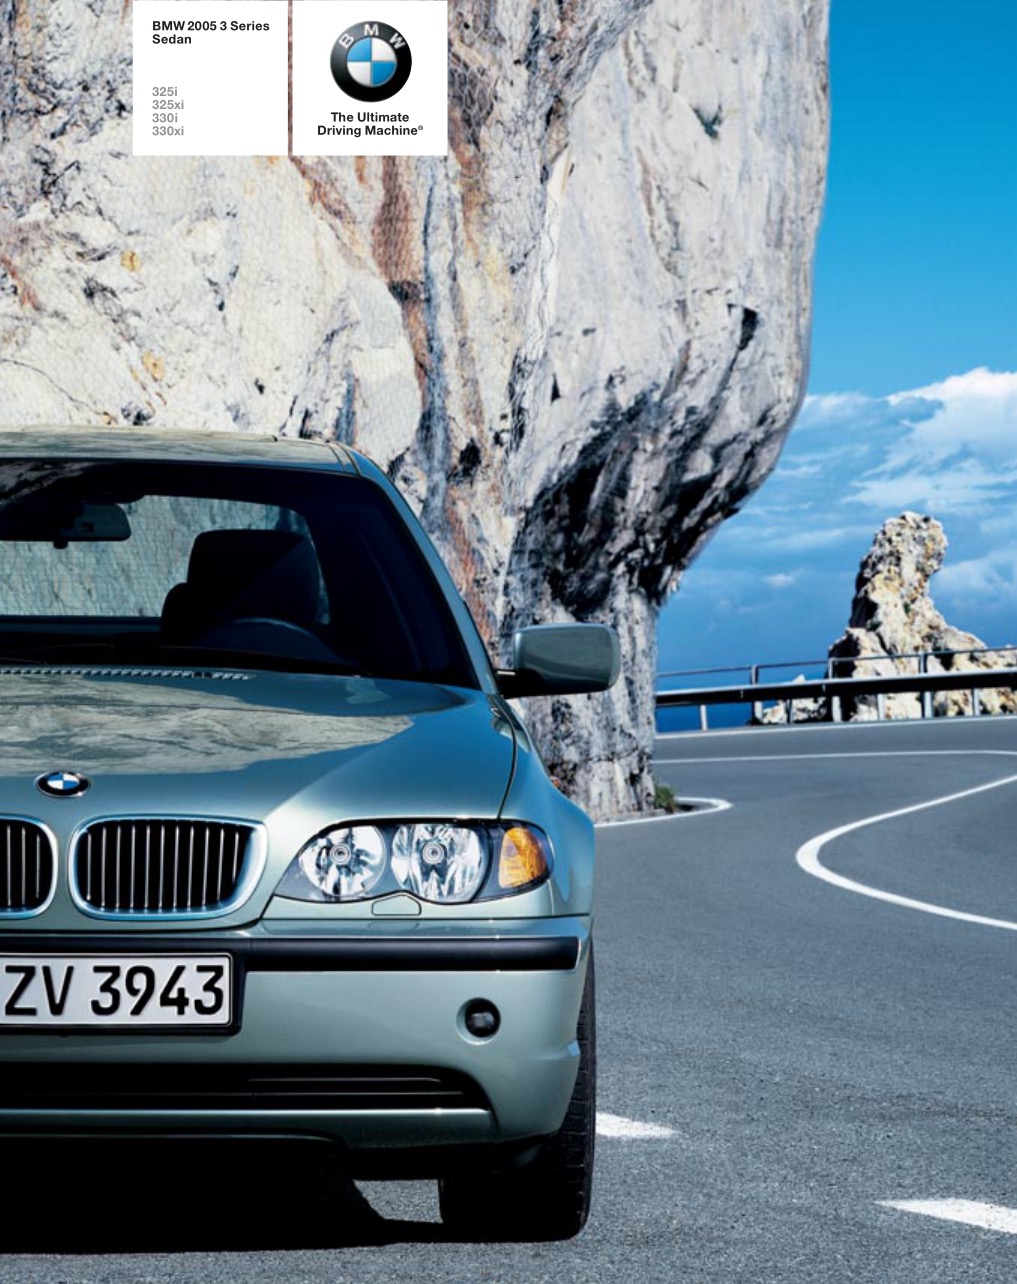 2005 BMW 3-Series Sedan Brochure